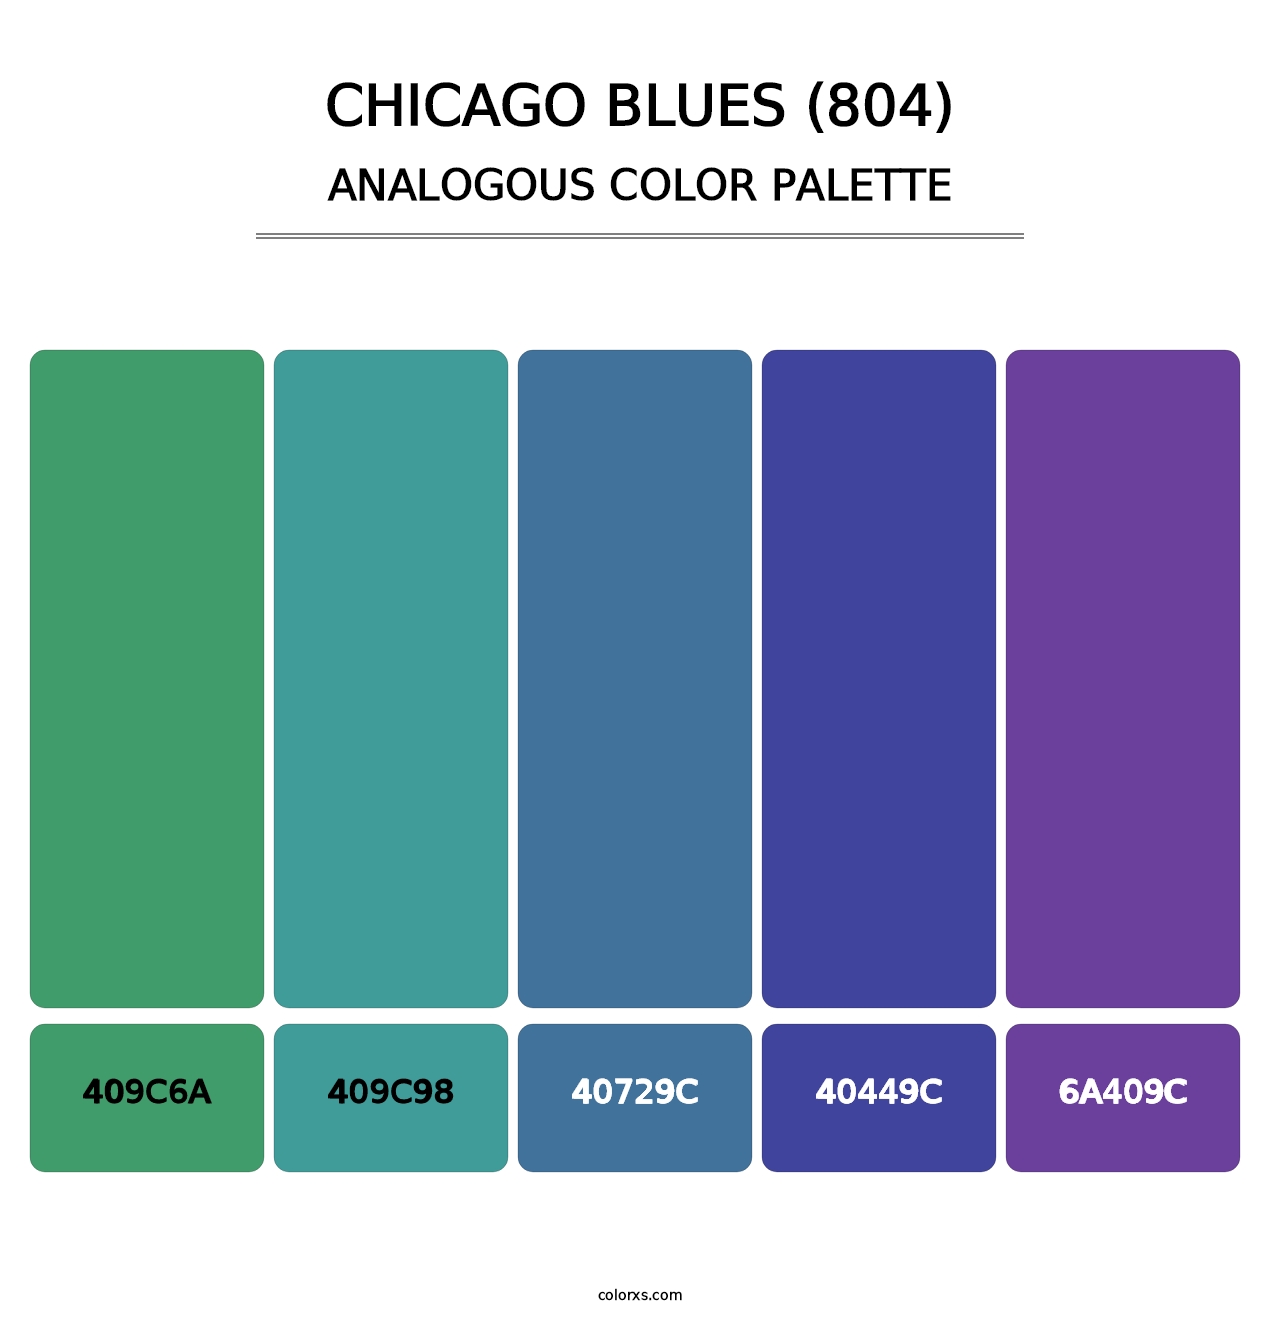 Chicago Blues (804) - Analogous Color Palette